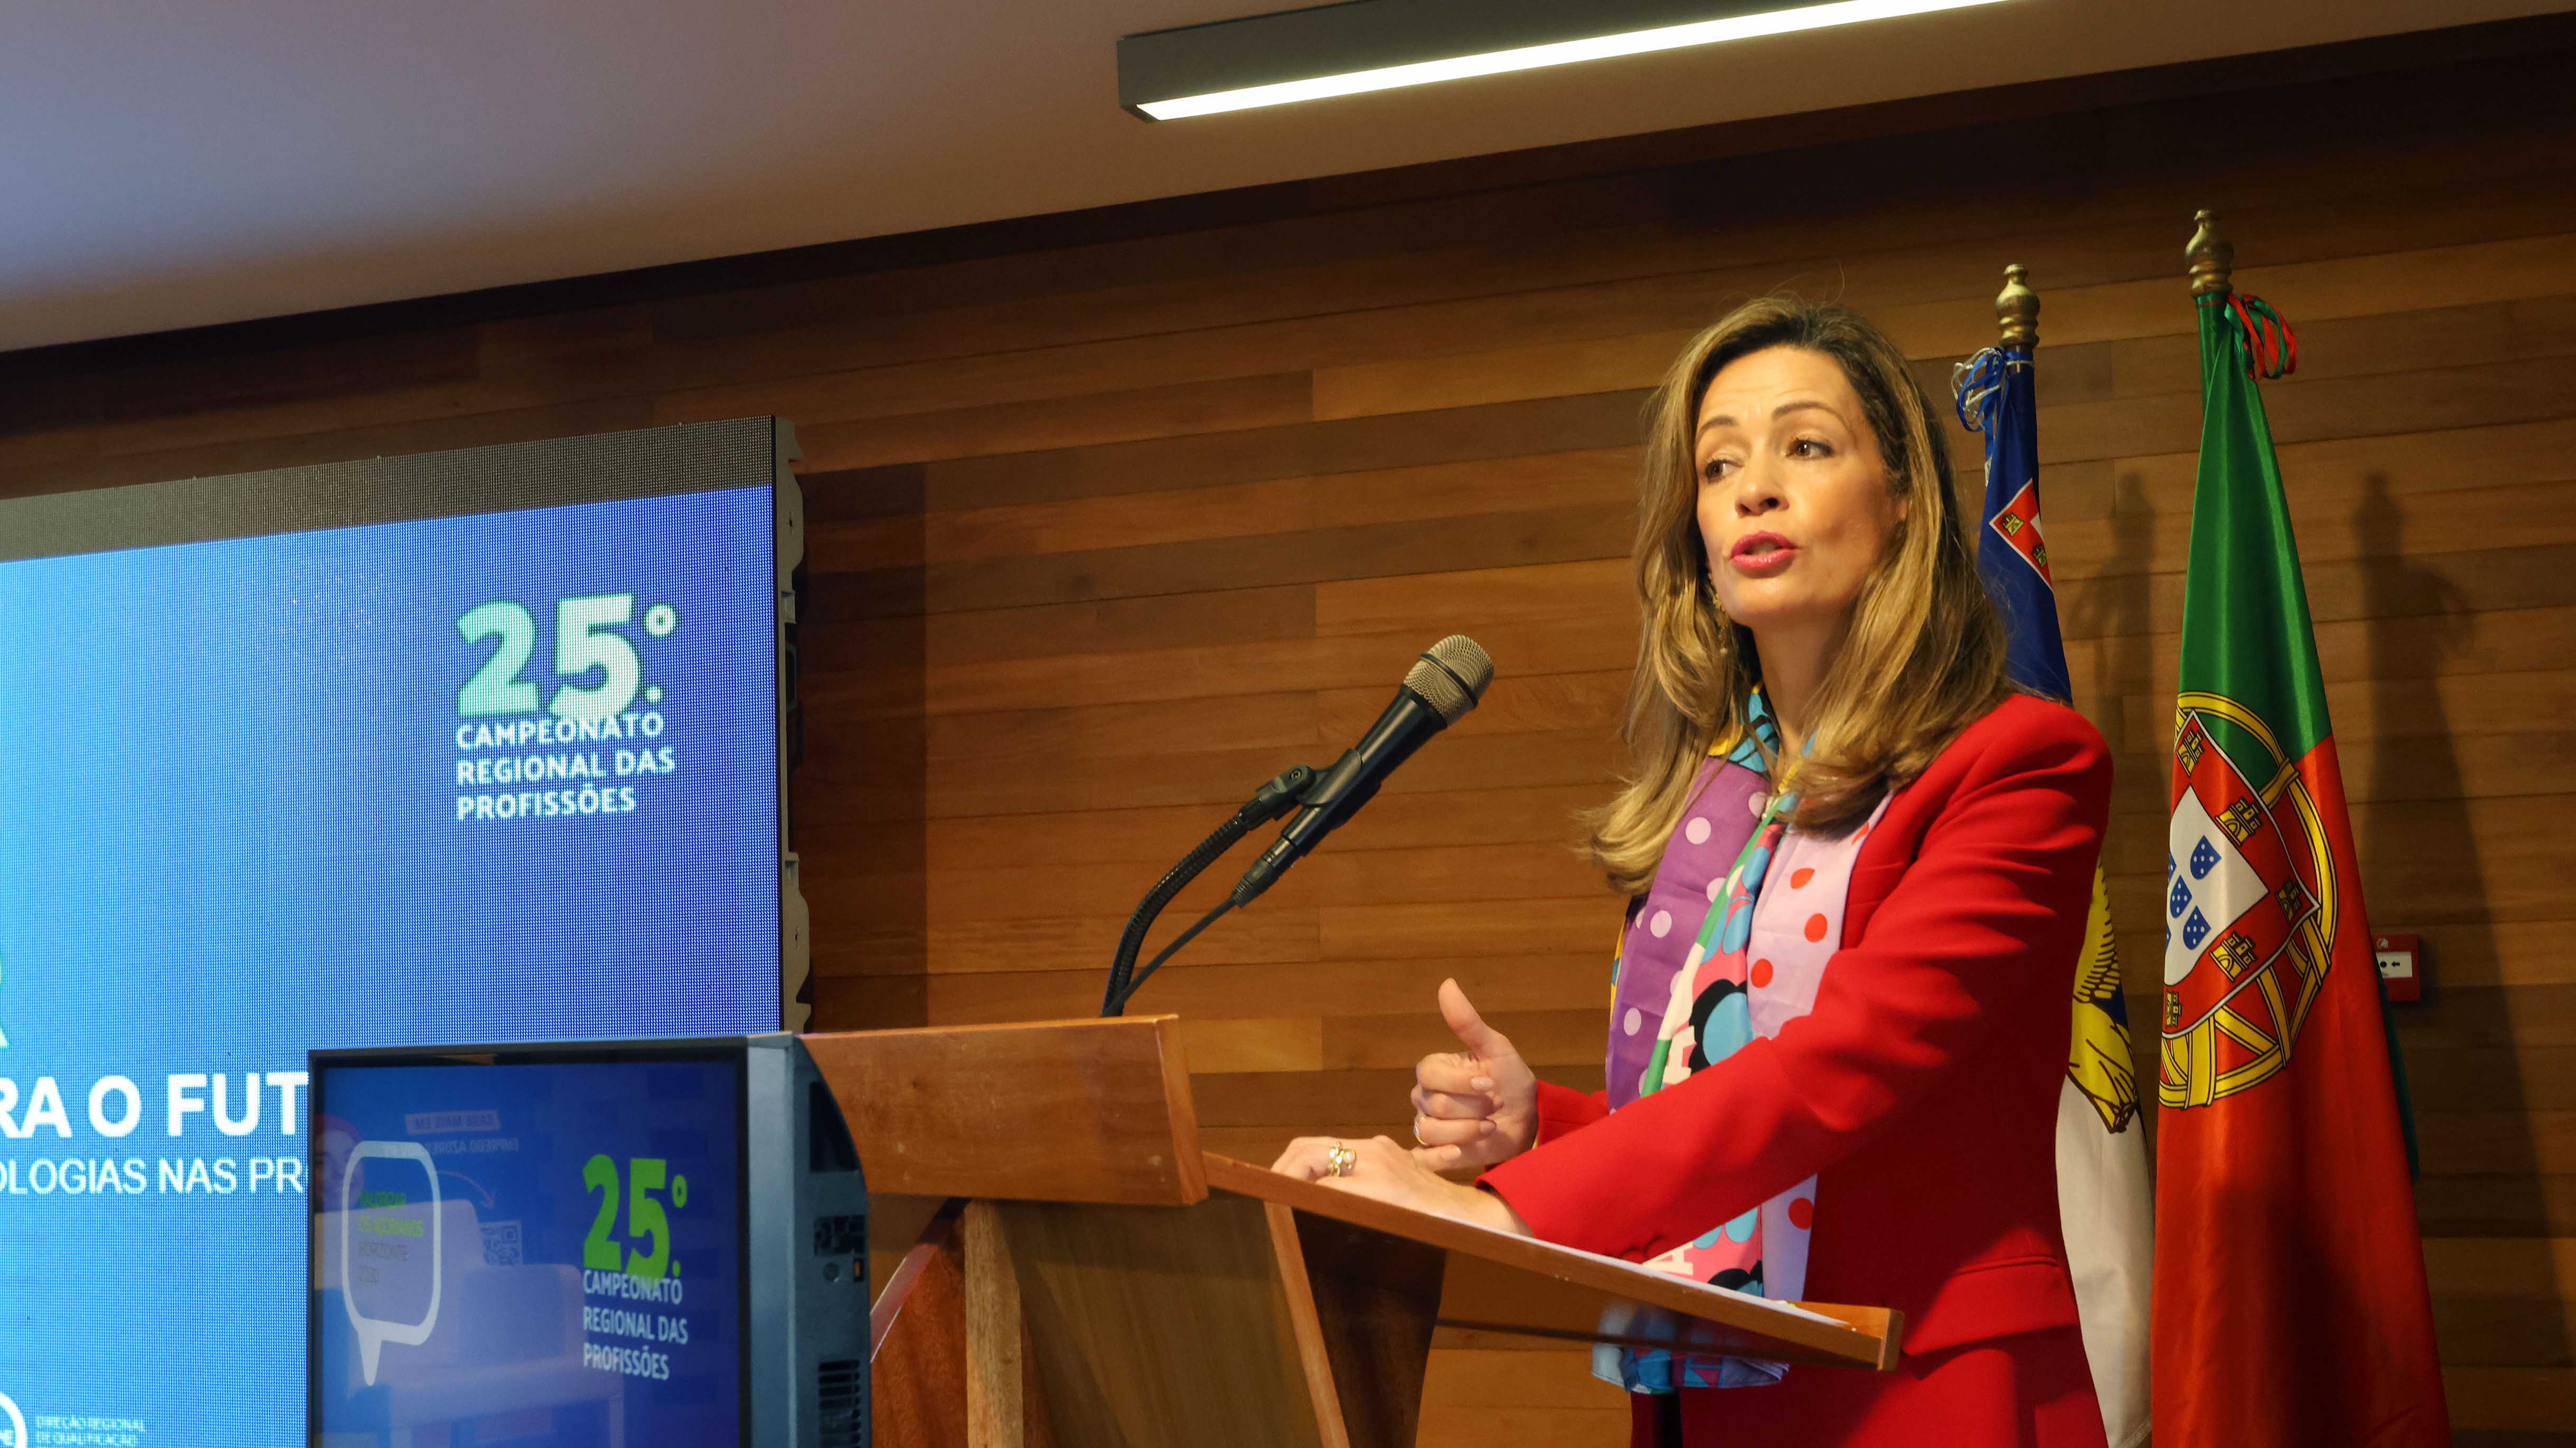 Abertura da conferência “Capacitar os Açores para o Futuro: O Impacto das Novas Tecnologias nas Profissões”